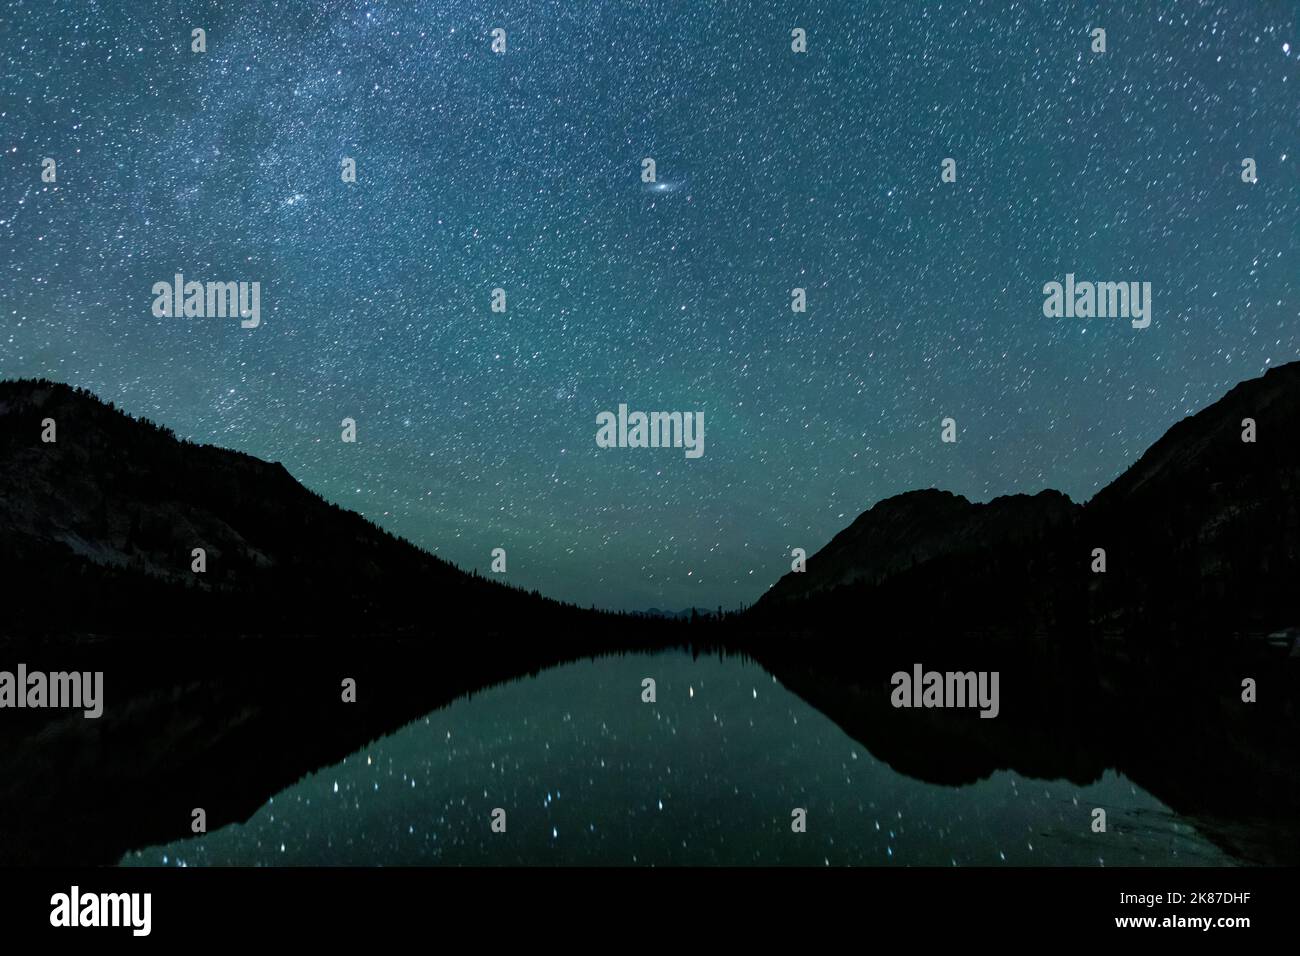 Der Toxaway Lake befindet sich in Idahos Sawtooth Wilderness, der in einer Sommernacht mit vielen Sternen am Himmel gesehen und sich in der Wasseroberfläche widerspiegelt. Stockfoto